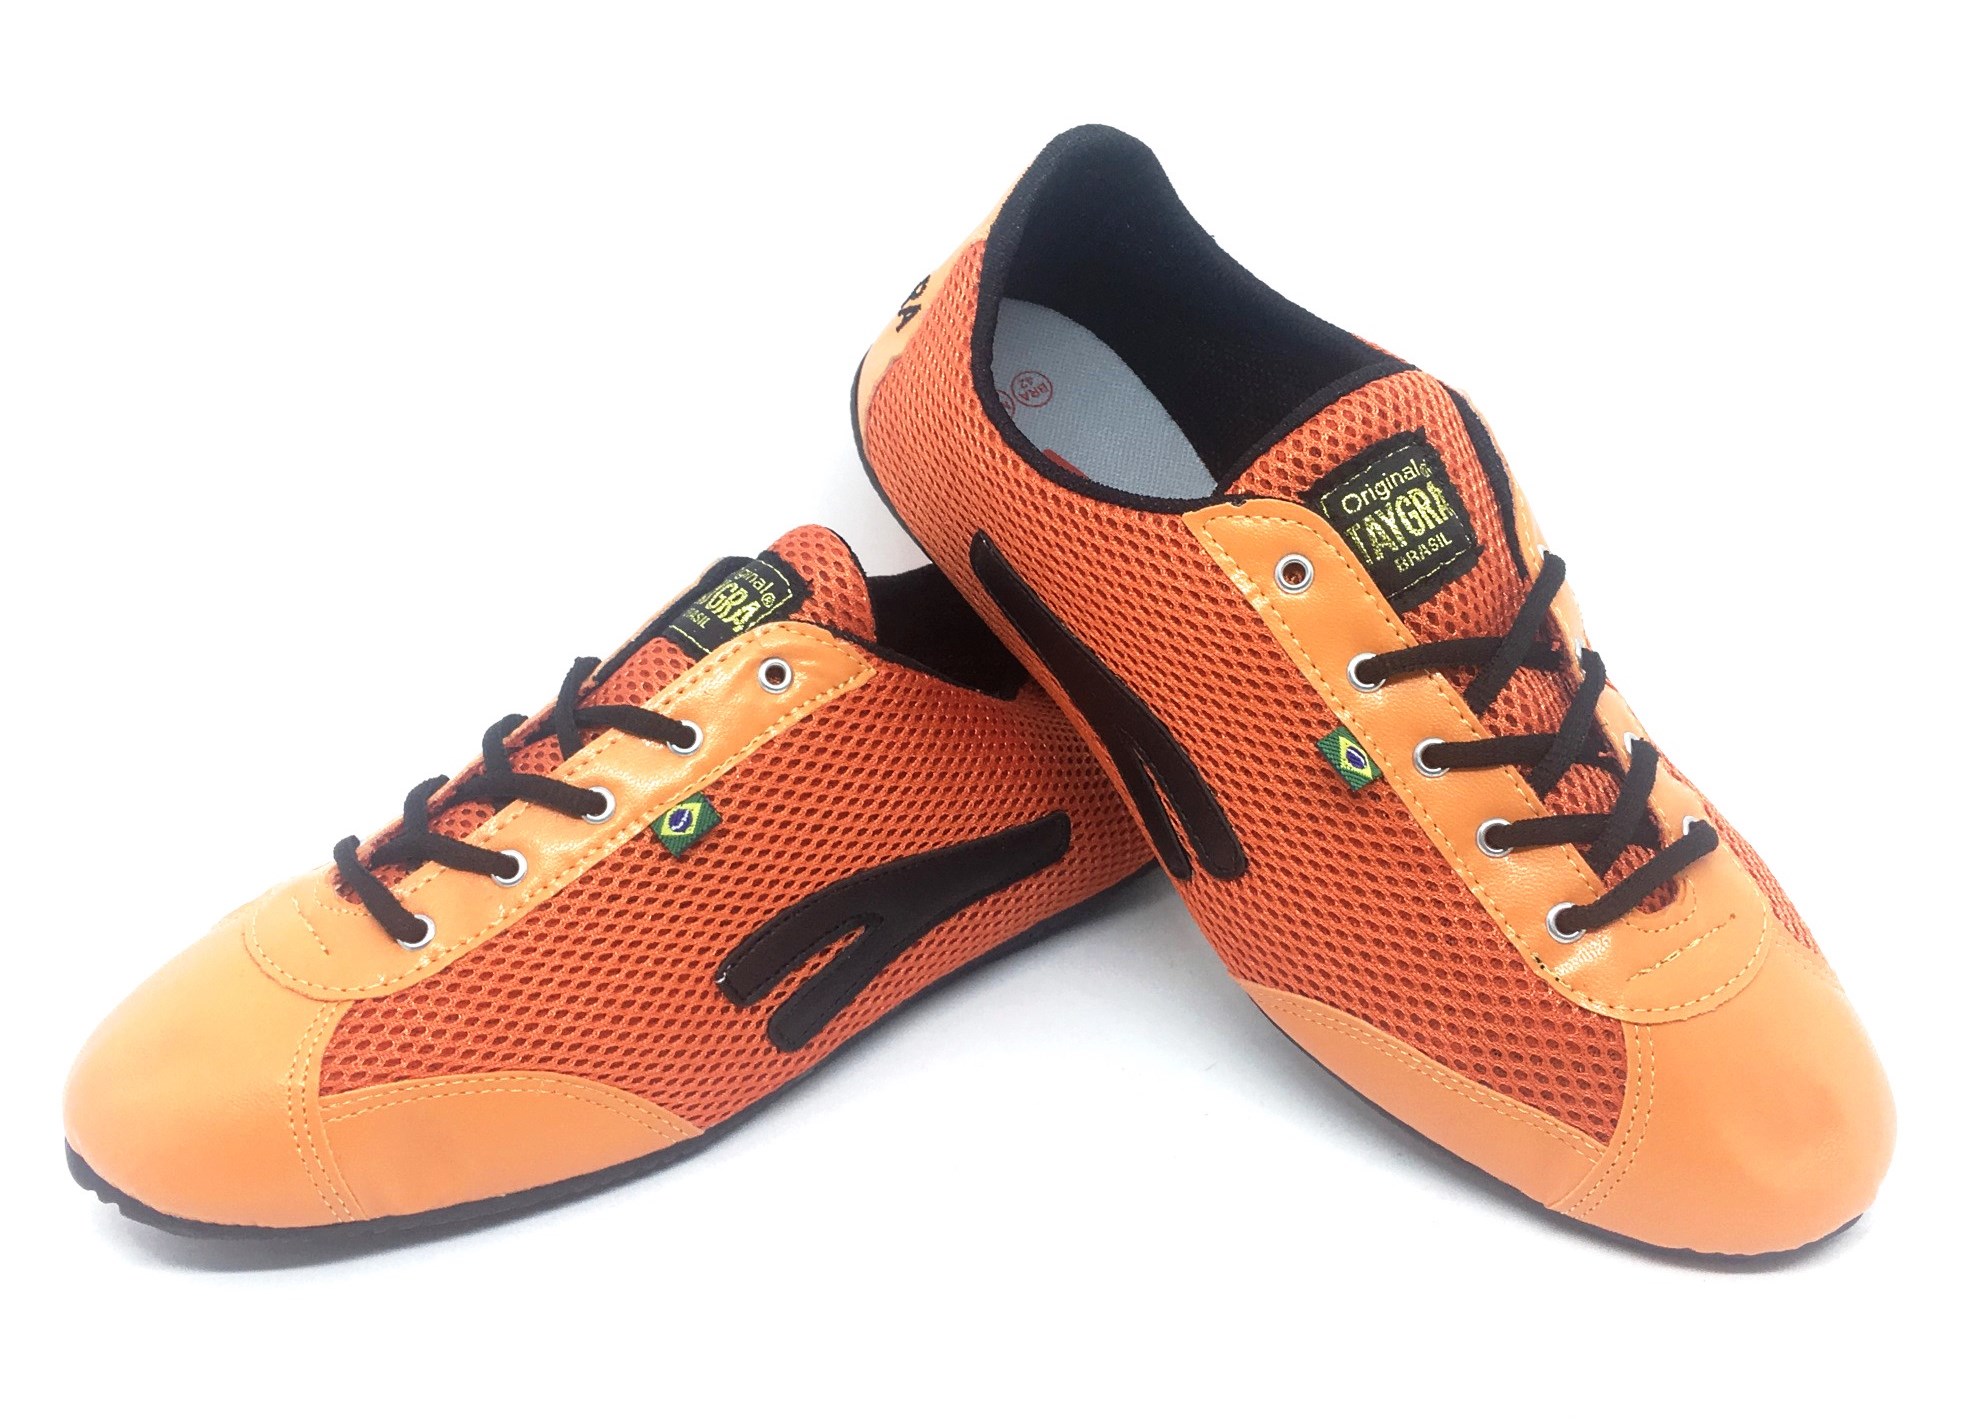 Chaussures TAYGRA slim orange et noir